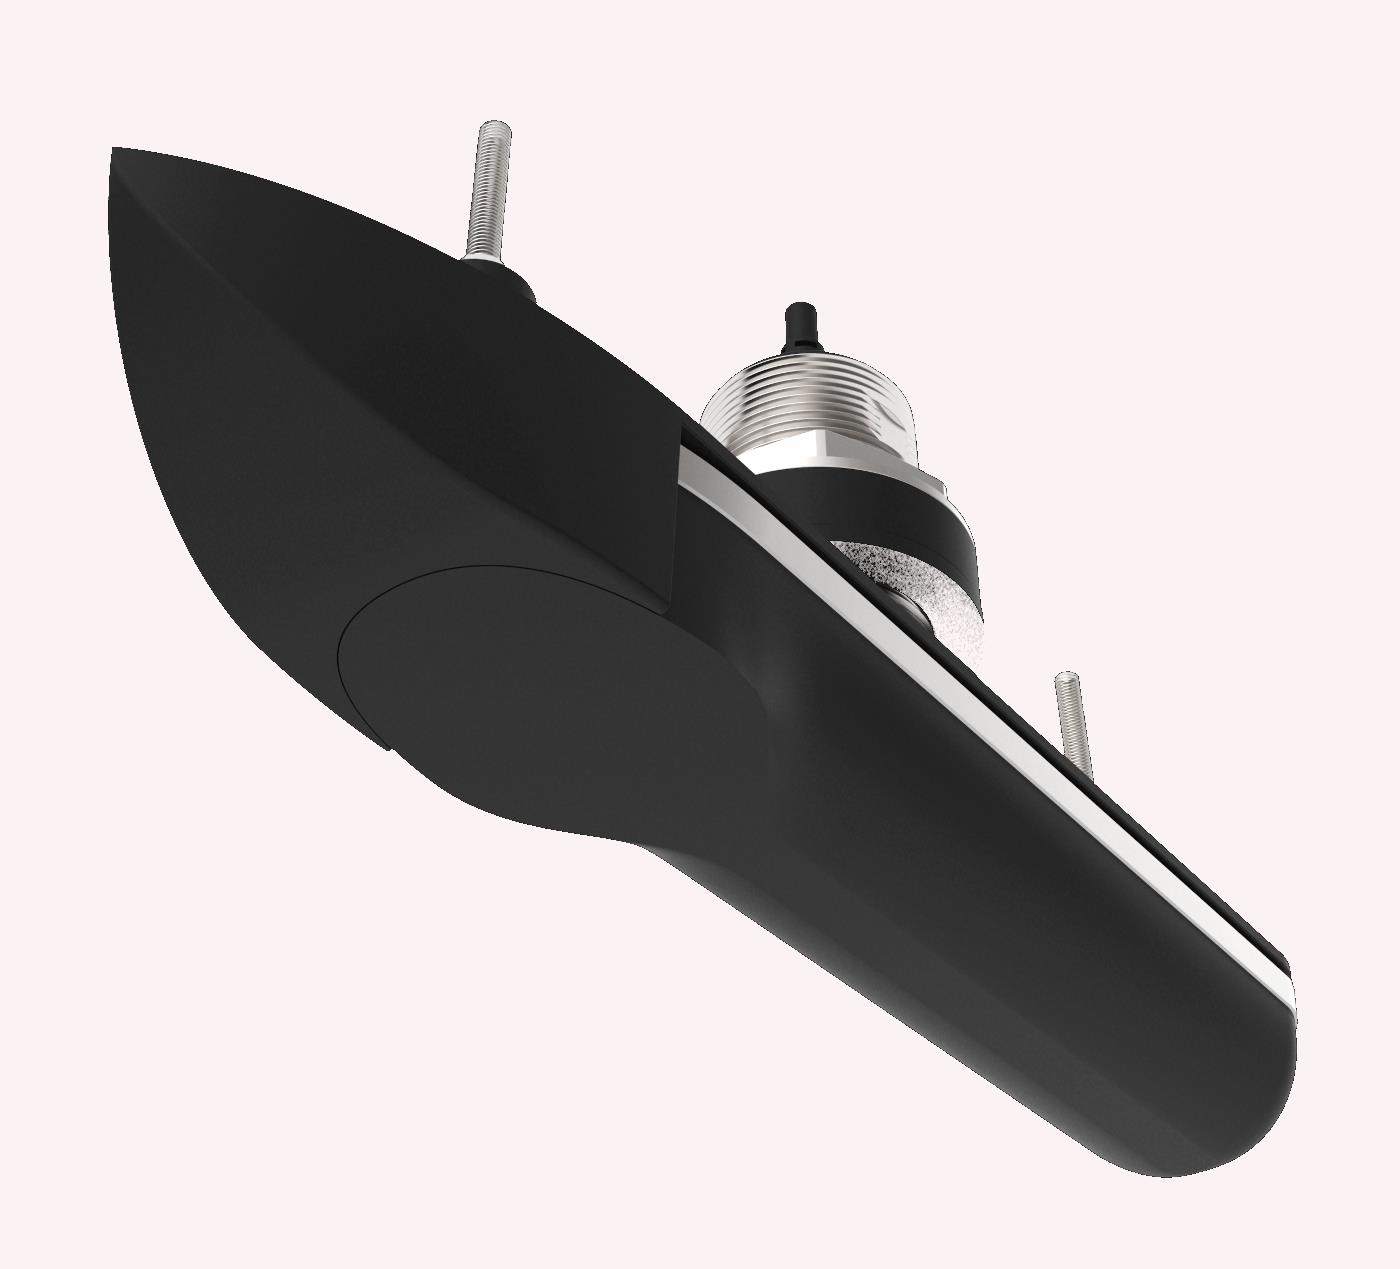 Raymarine RVM-412 RealVision 3D-Edelstahl-Durchbruchgeber, Backbord Steuerbord 12°